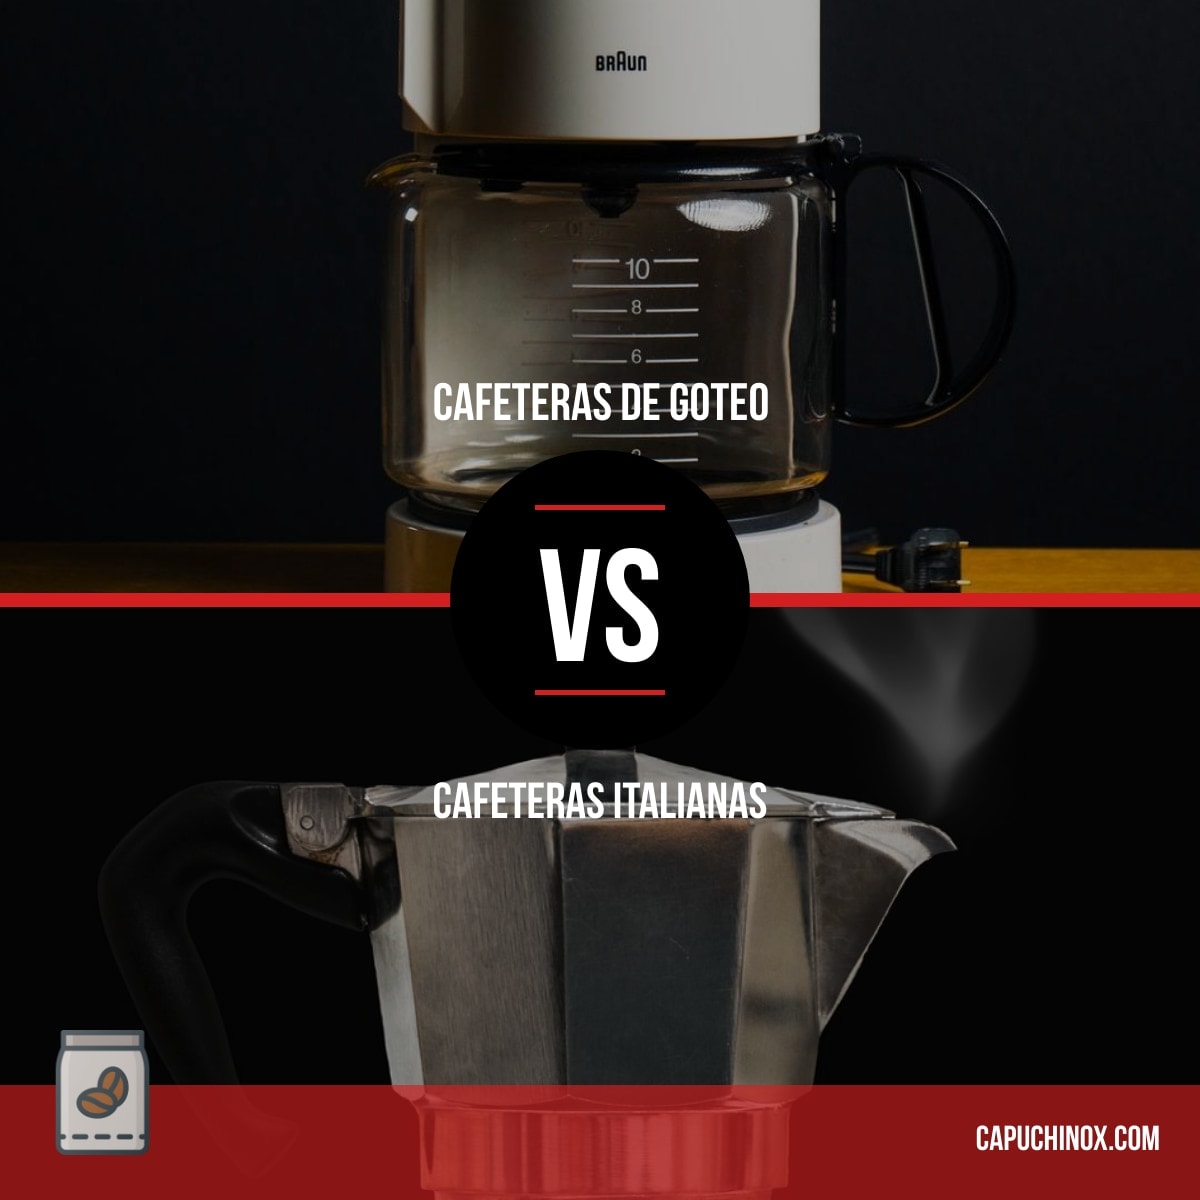 Cafeteras italianas vs cafeteras de goteo